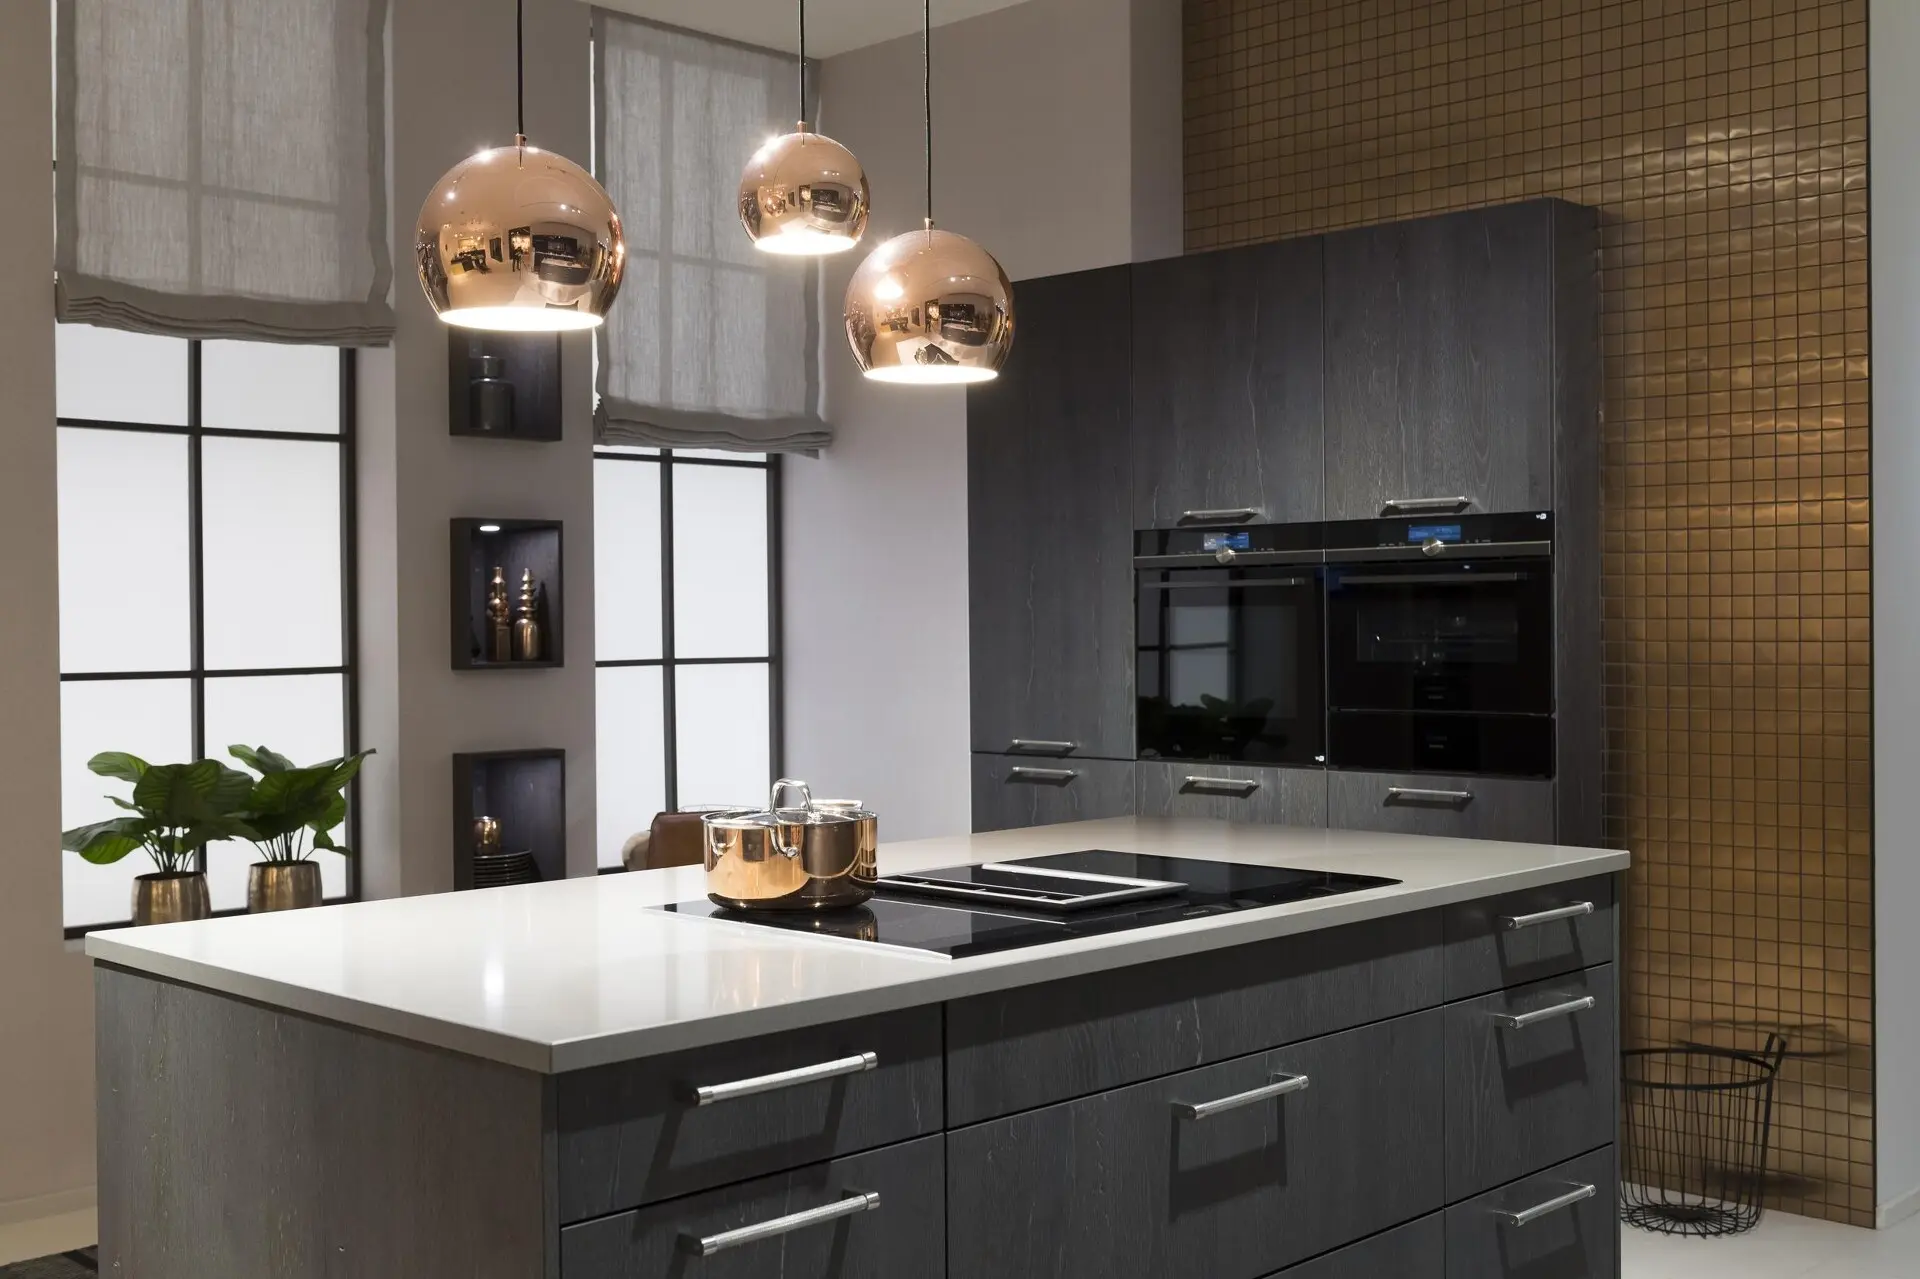 Modernes Kücheninterieur mit dunklen Häcker-Schränken, Küchengeräten aus Edelstahl und kupferfarbenen Pendelleuchten über einer weißen Kücheninsel.